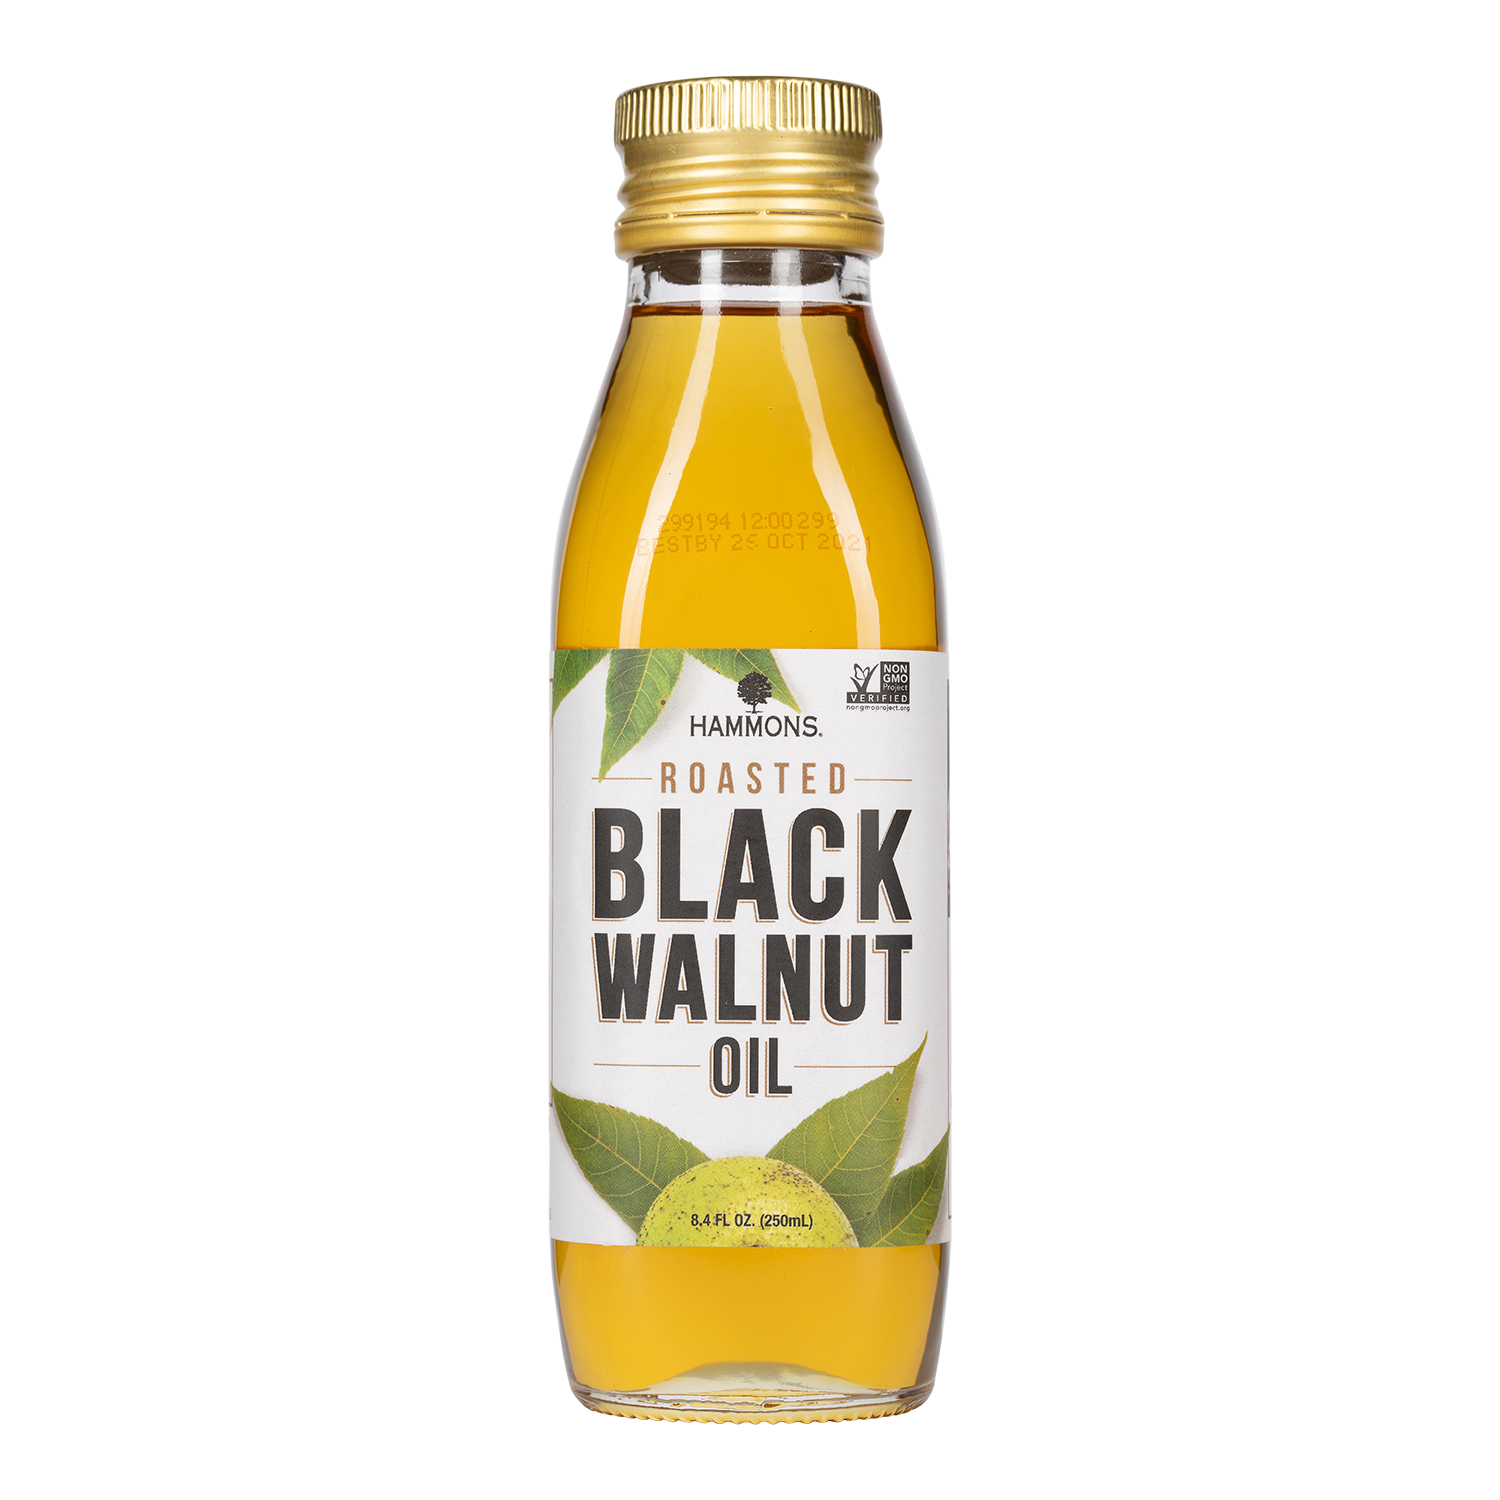 Black Walnut Oil